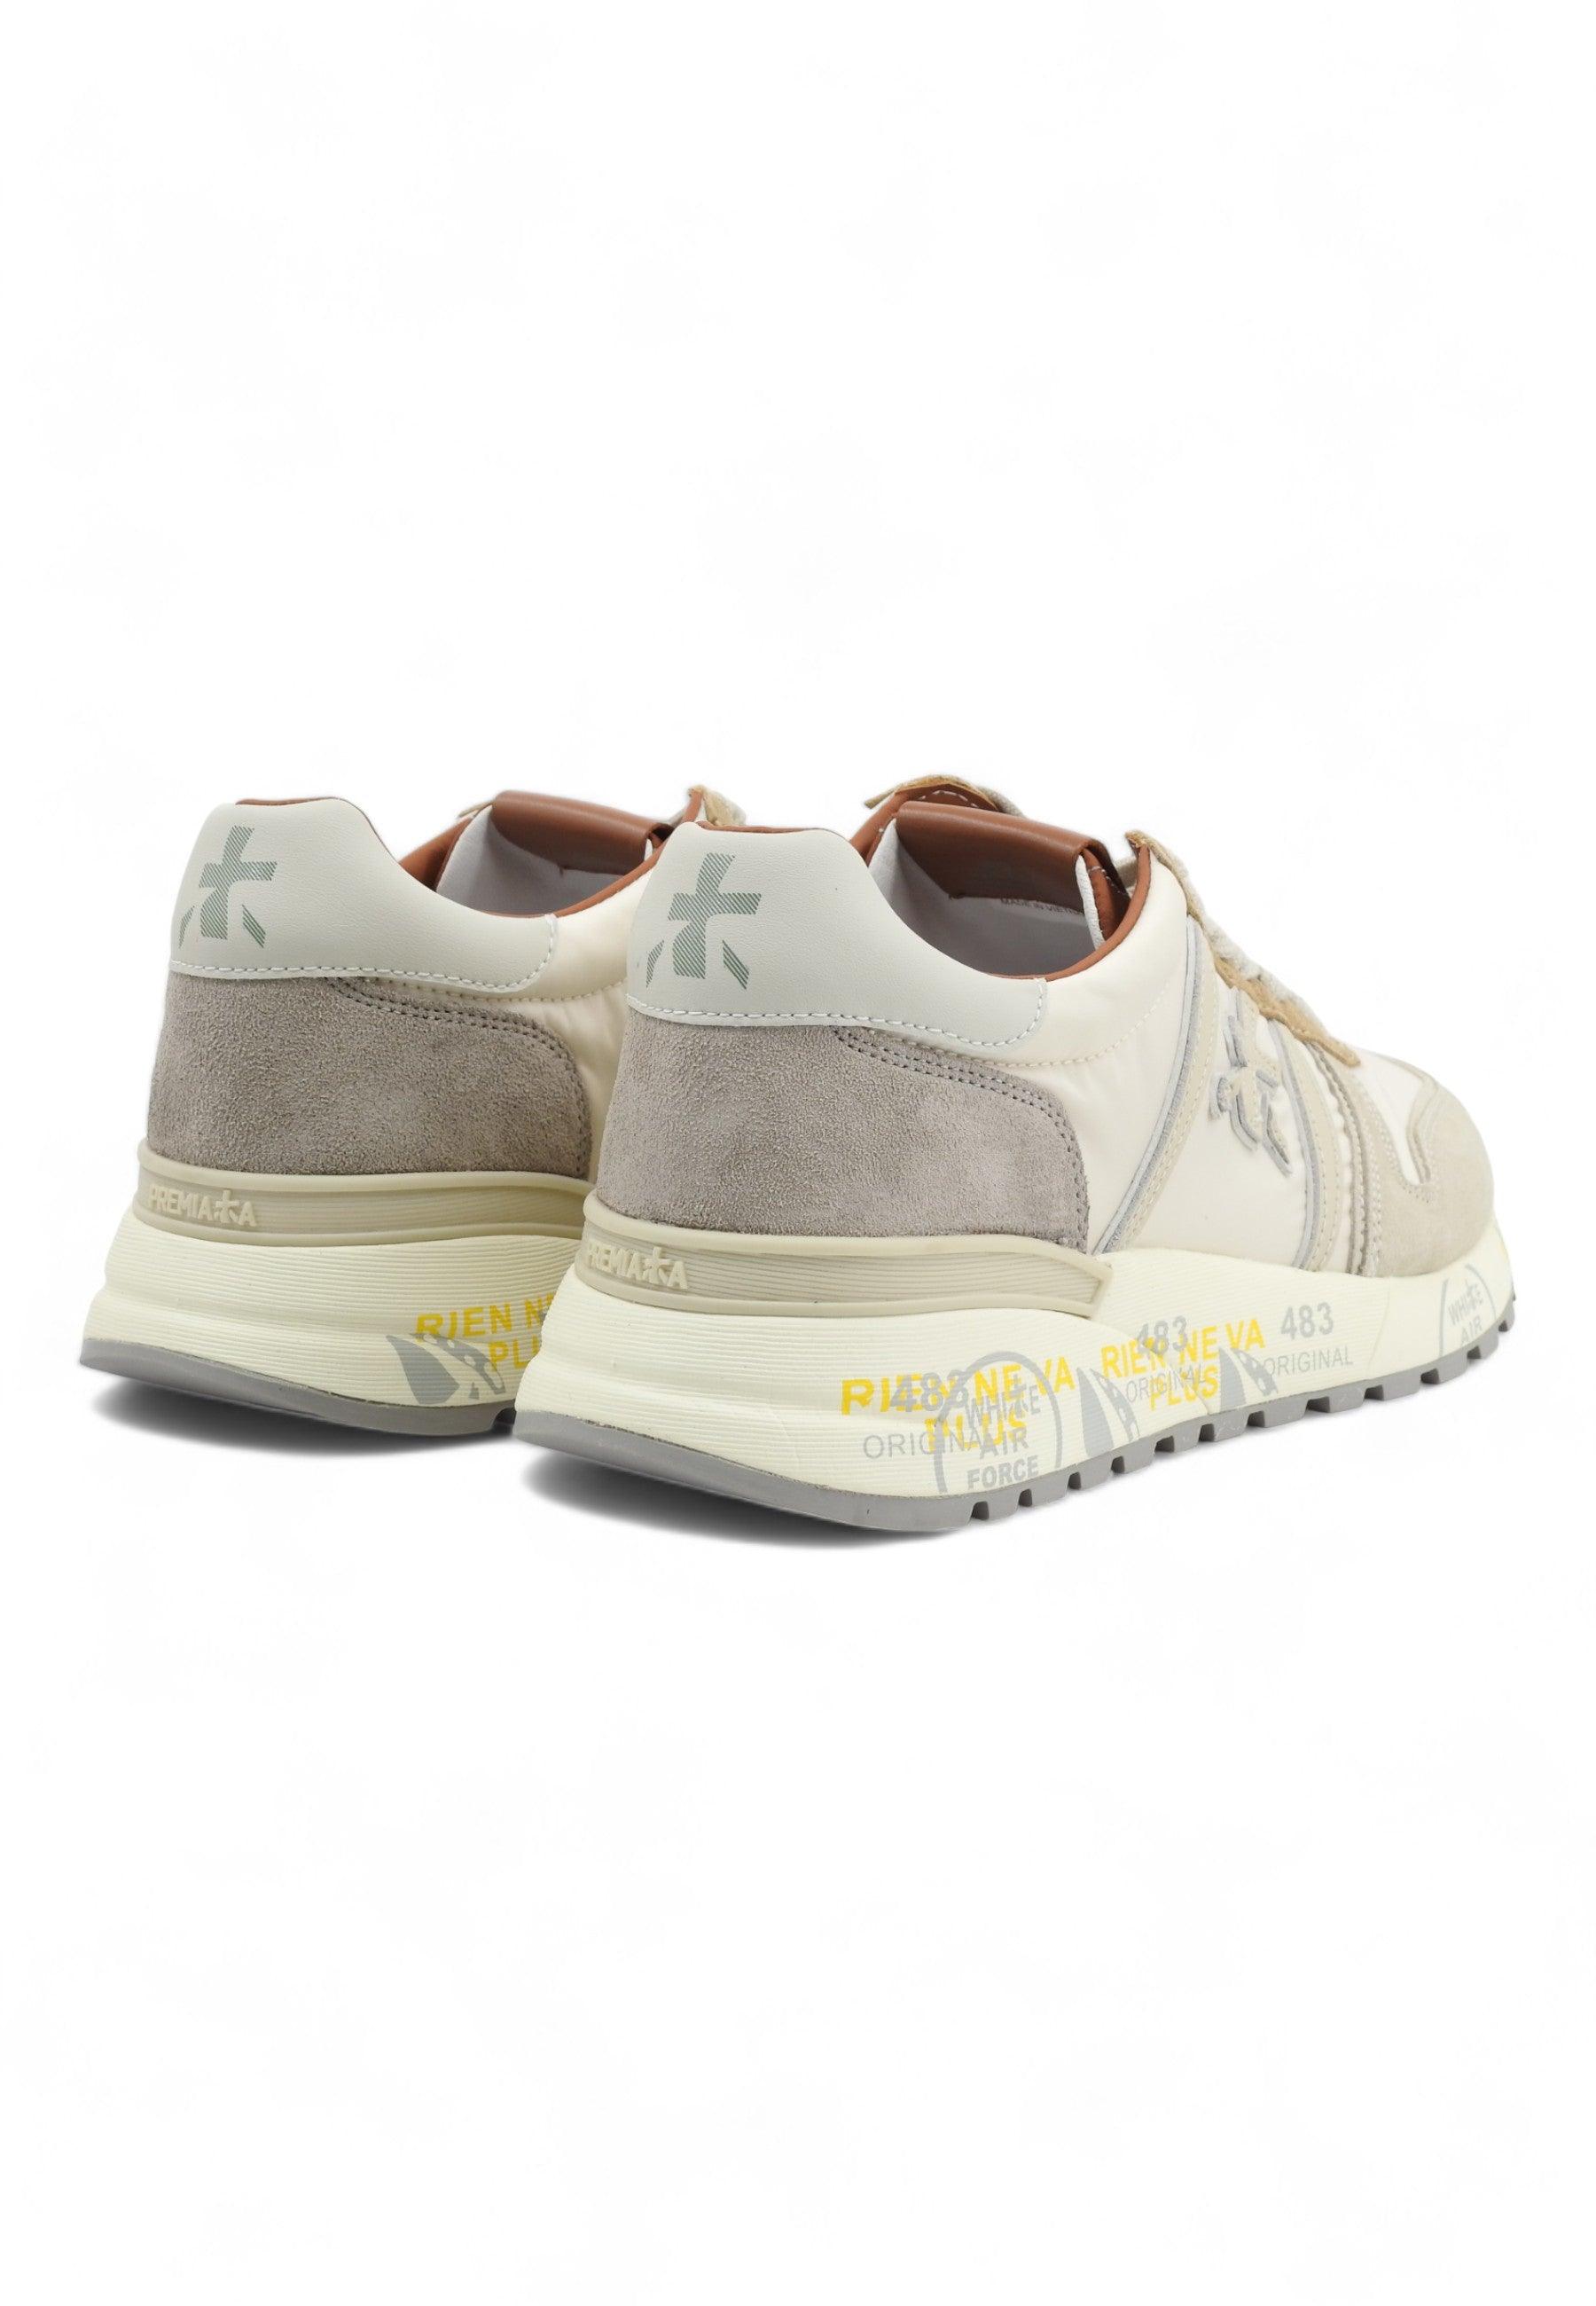 PREMIATA Sneaker Uomo Light Grey LANDER-6633 - Sandrini Calzature e Abbigliamento